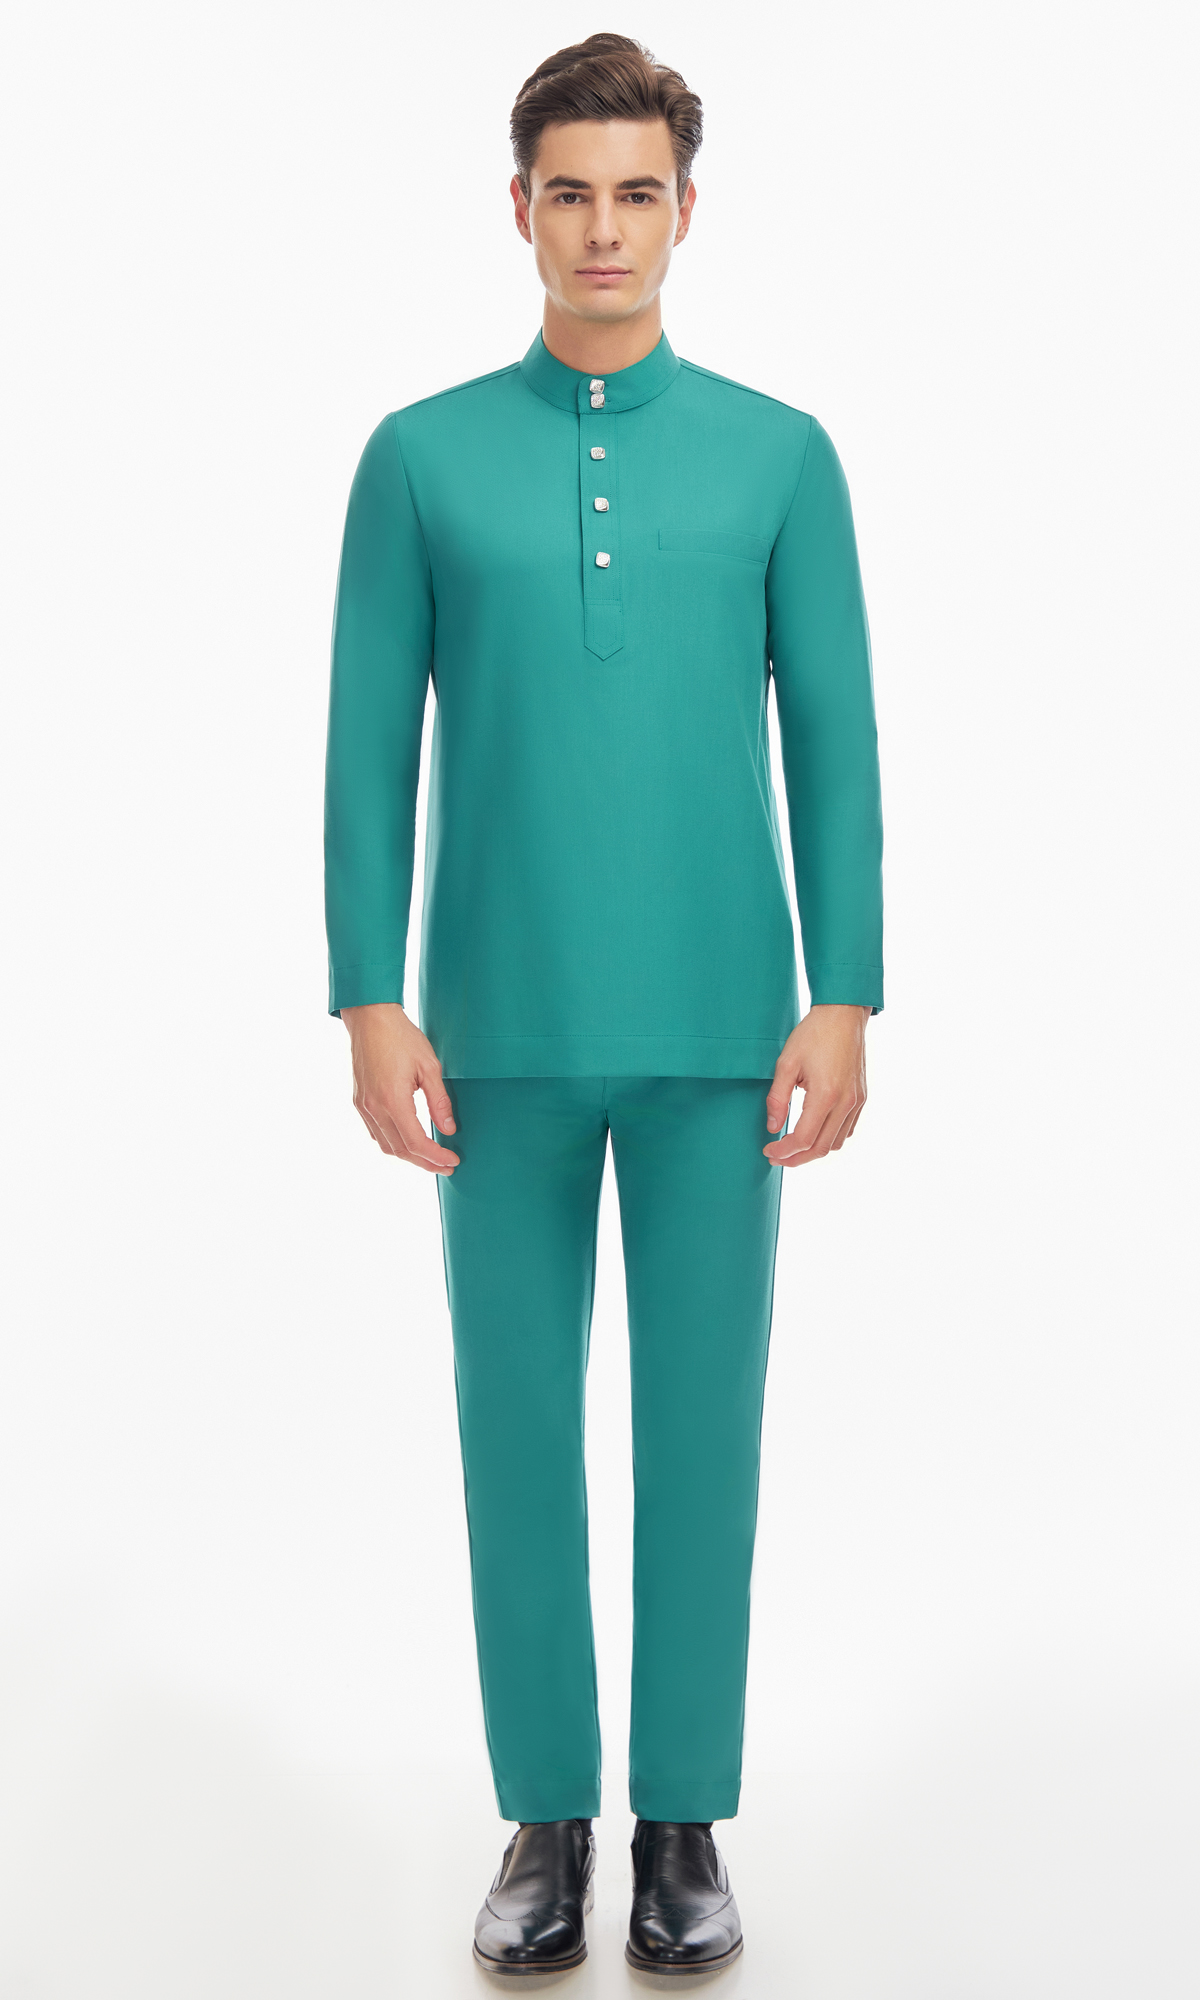 Harraz Baju Melayu in Teal Green